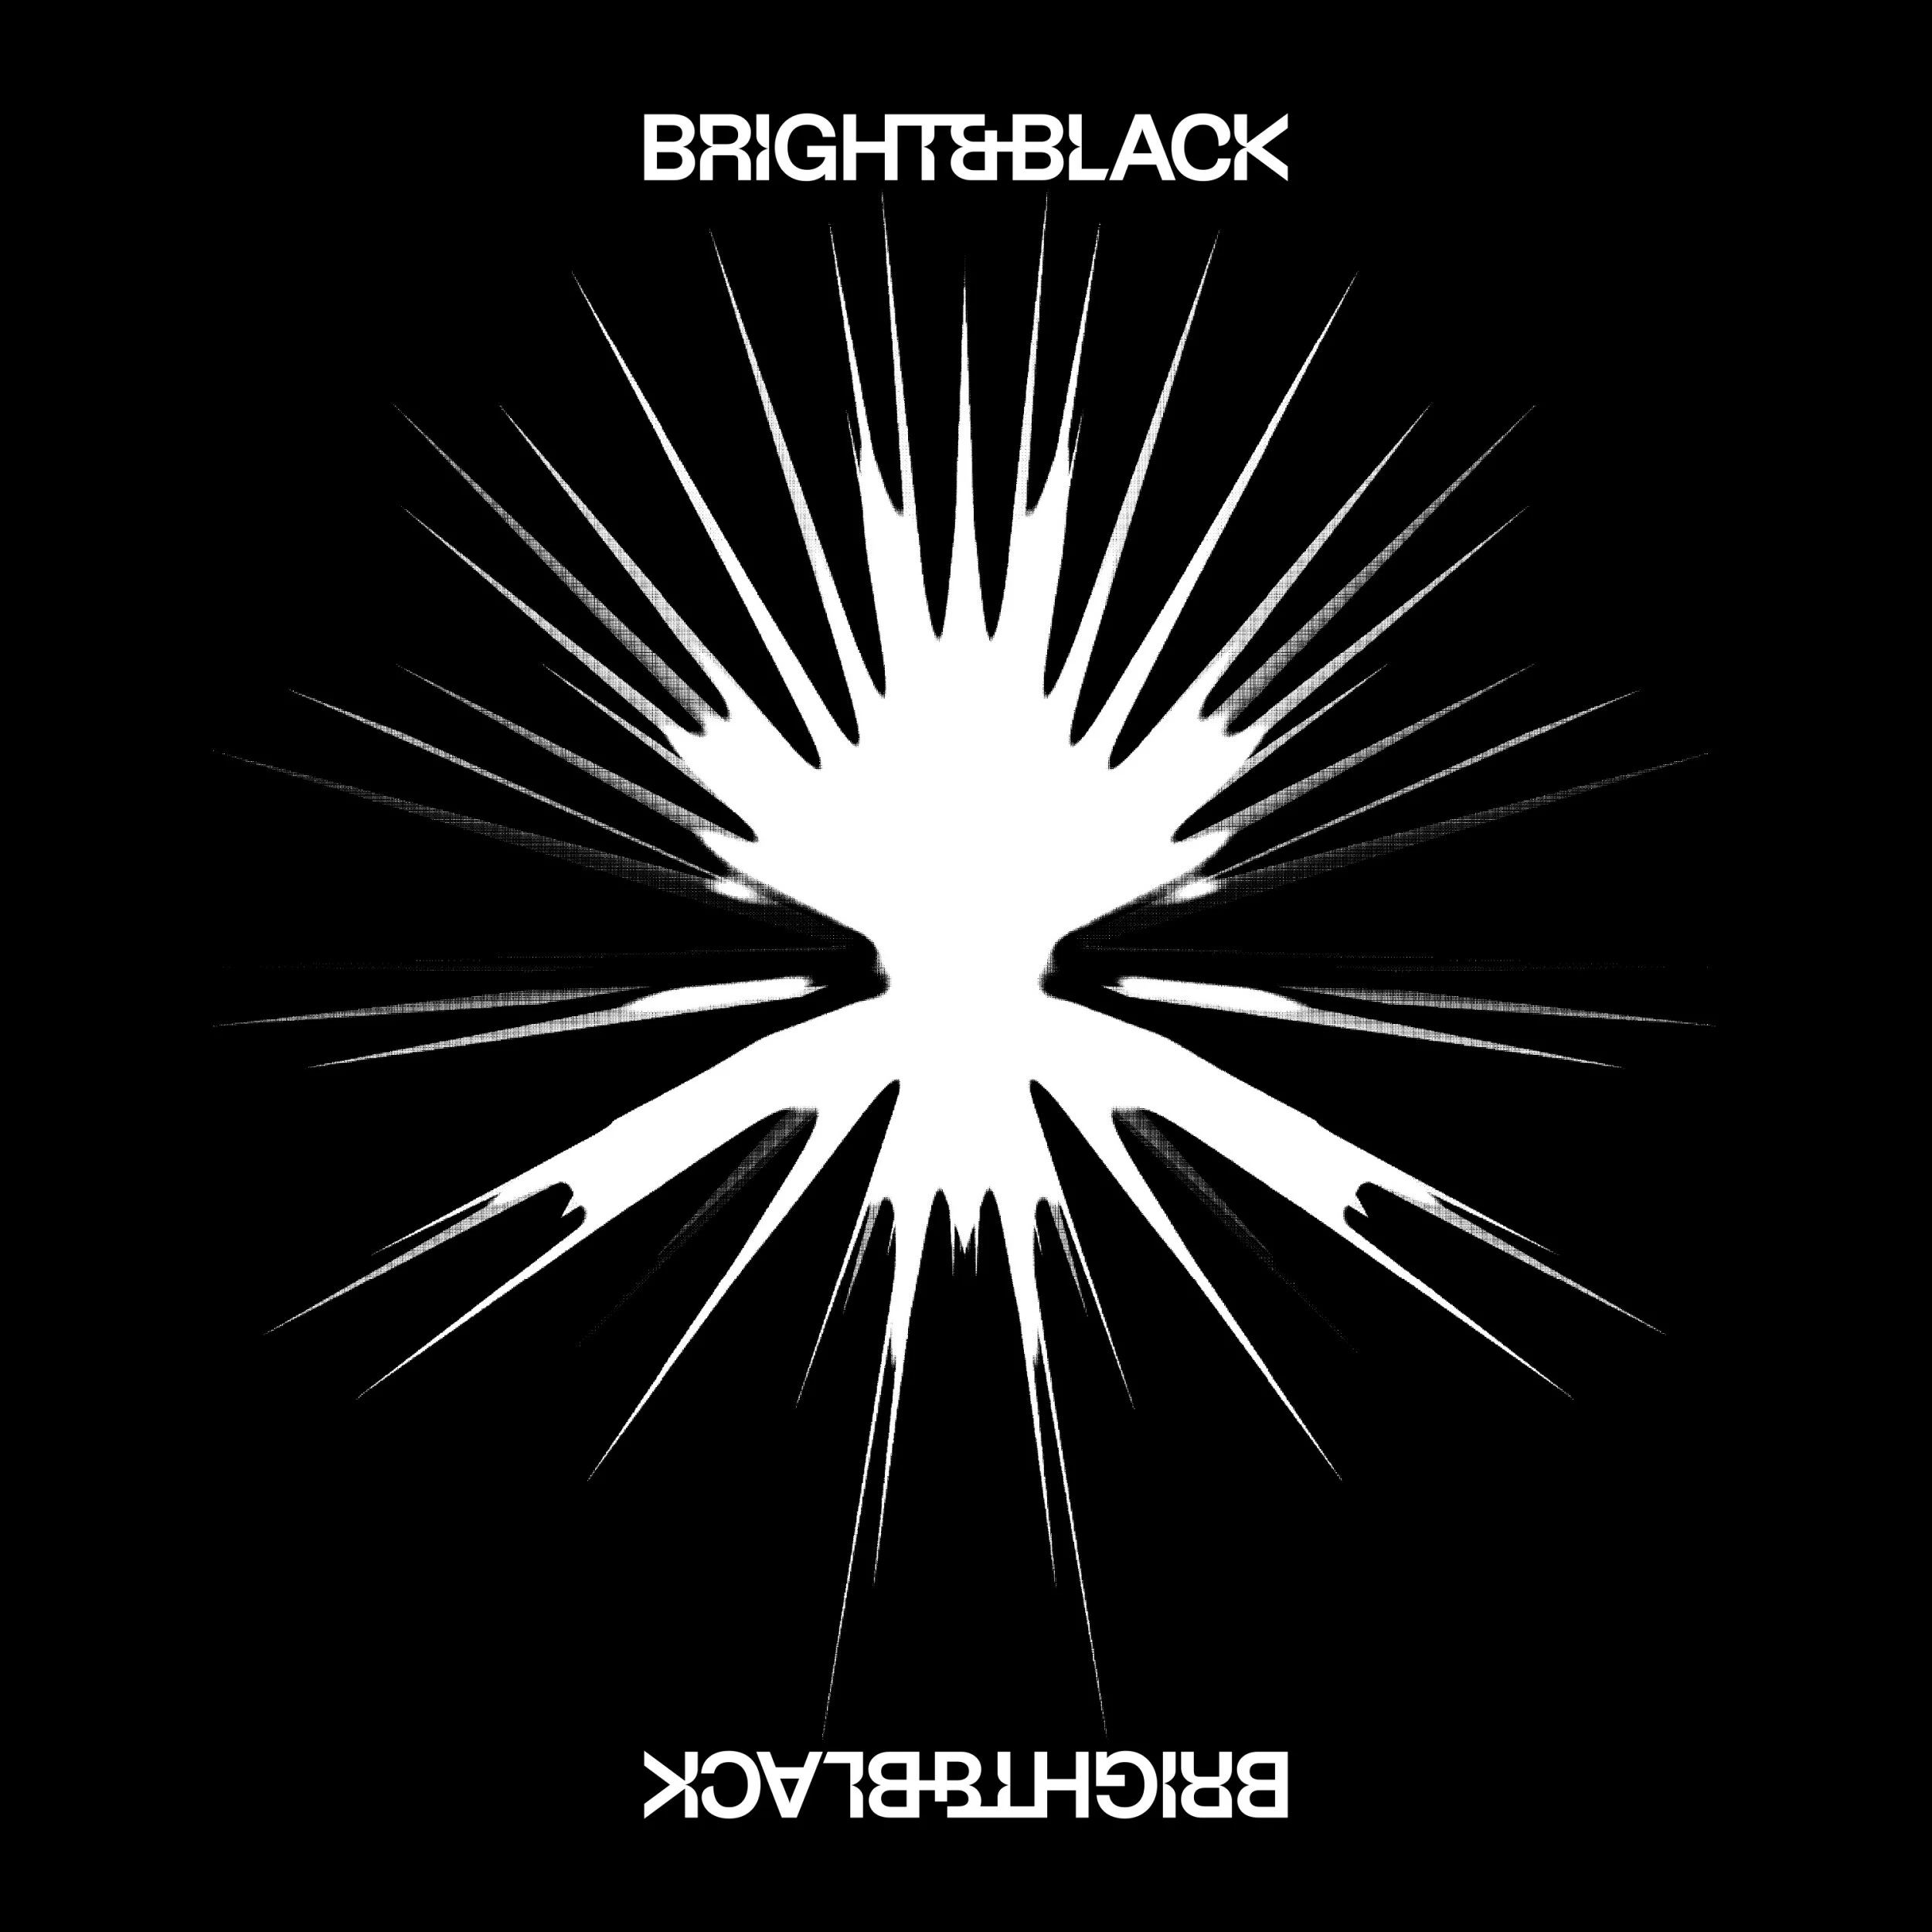 BRIGHT & BLACK FEAT. EICCA TOPPINEN/KRISTIAN JÄRVI/BALTIC SEA PHILHARMONIC - The Album [BLACK/WHITE SPLATTER DLP]